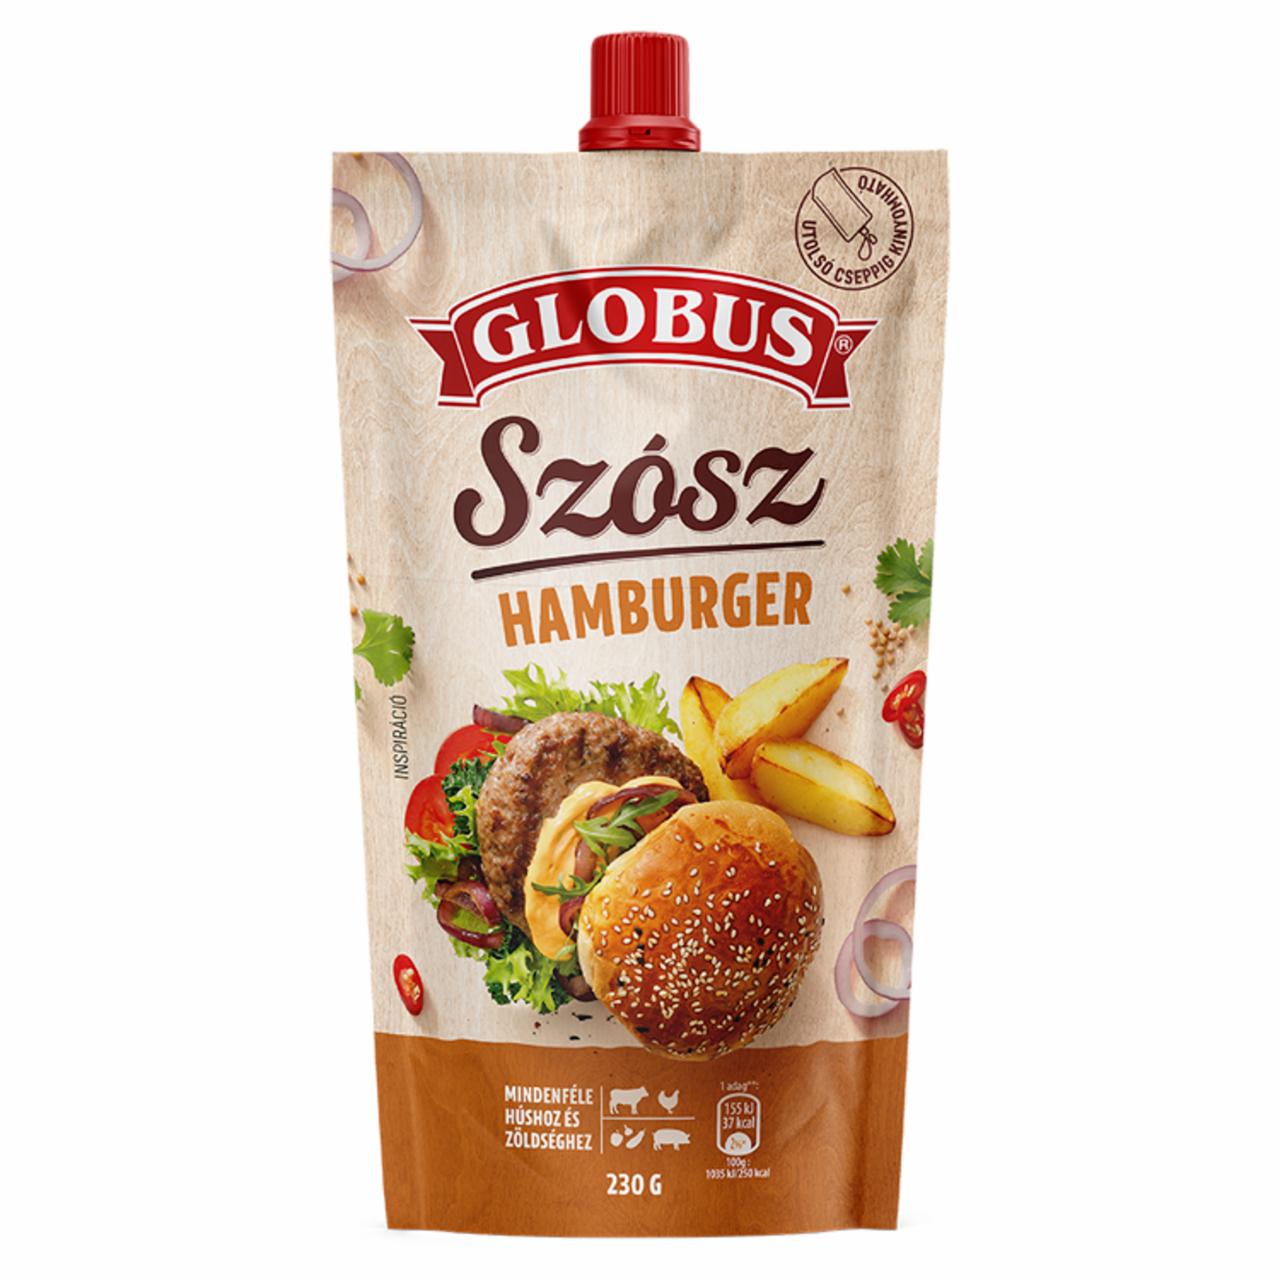 Képek - Globus hamburger szósz 230 g